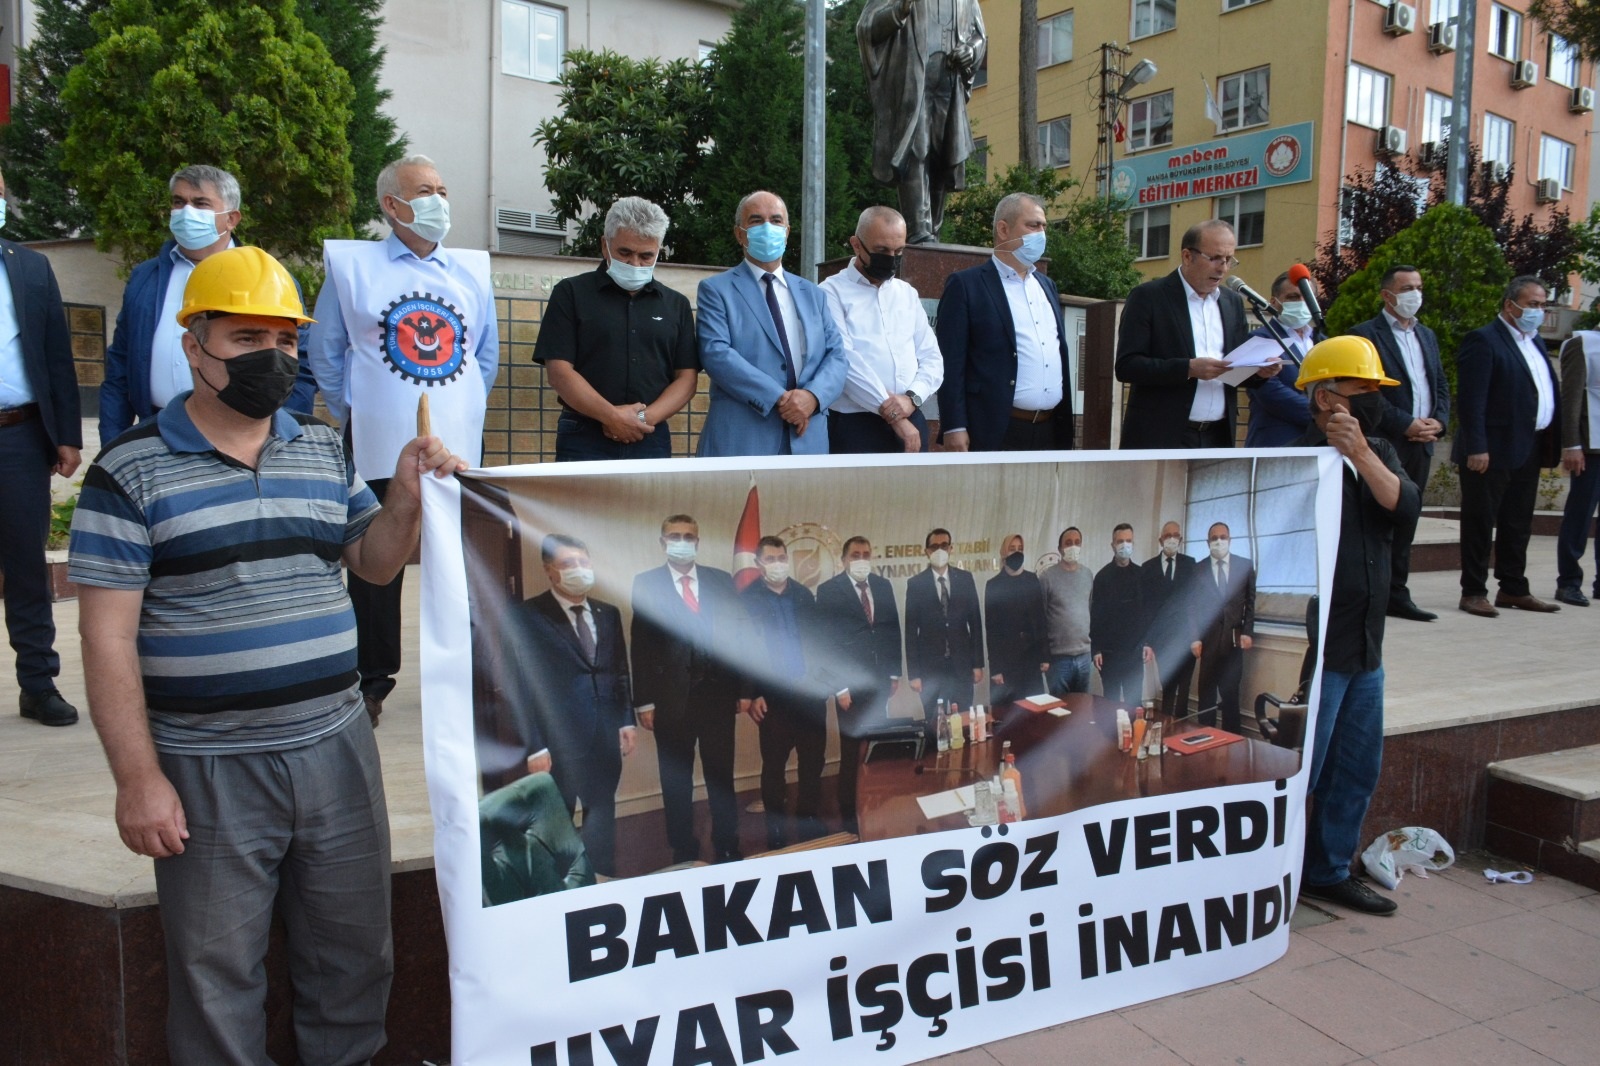 Sendikamız Genel Sekreteri Soma'da Kamu TİS süreci ve Uyar Madencilik Mağdurları ile İlgili Basın Açıklaması Yaptı